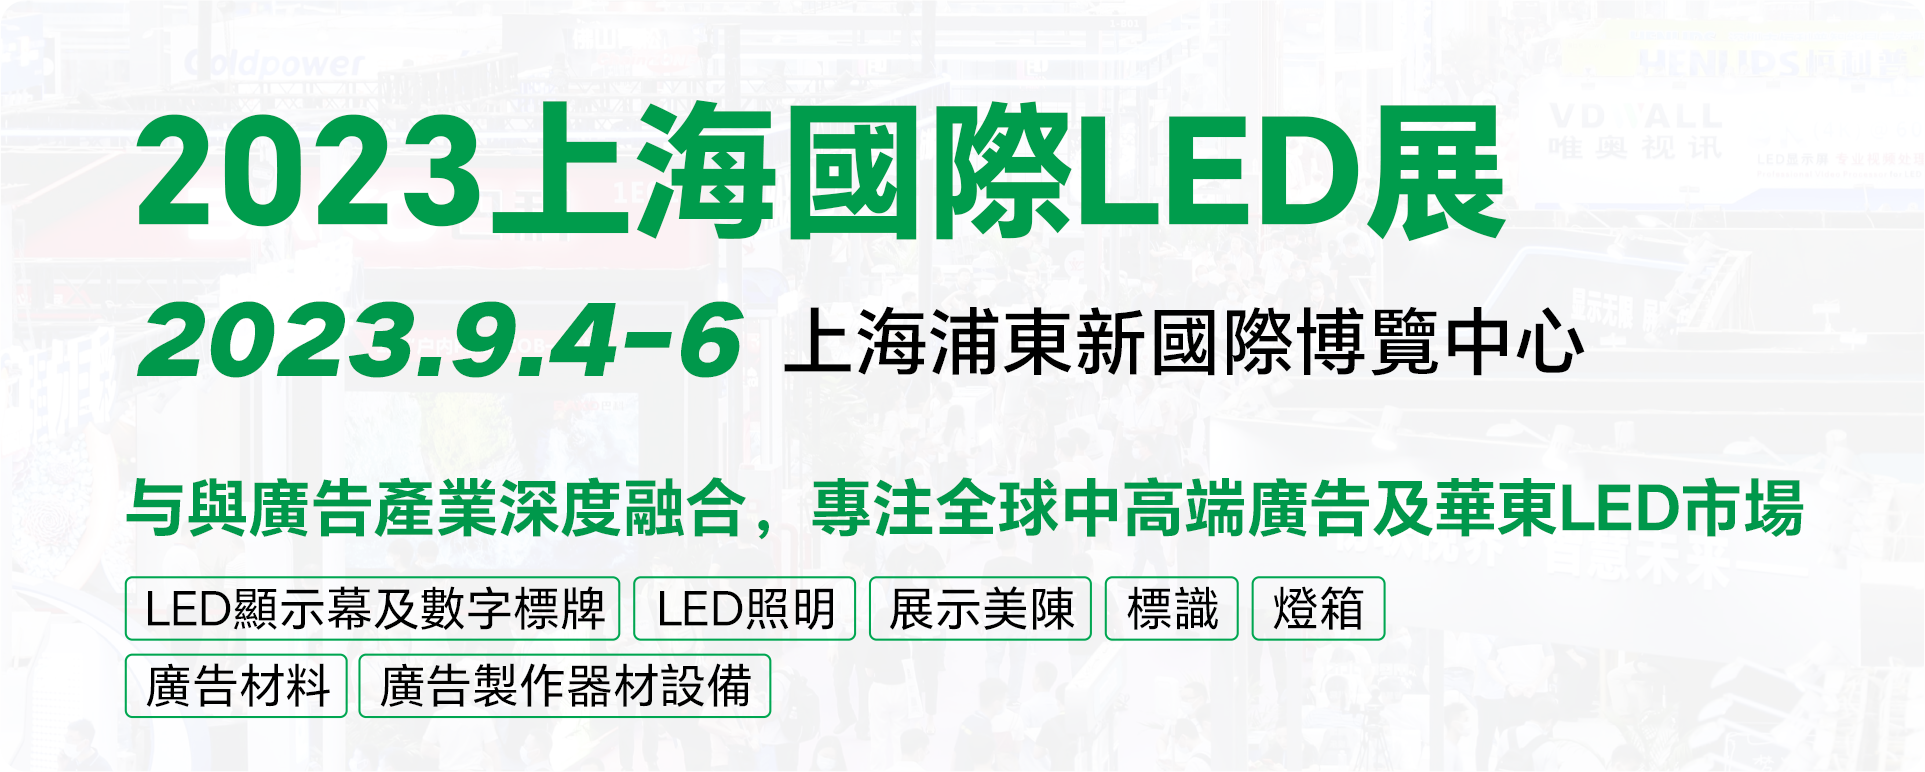 上海国际LED展